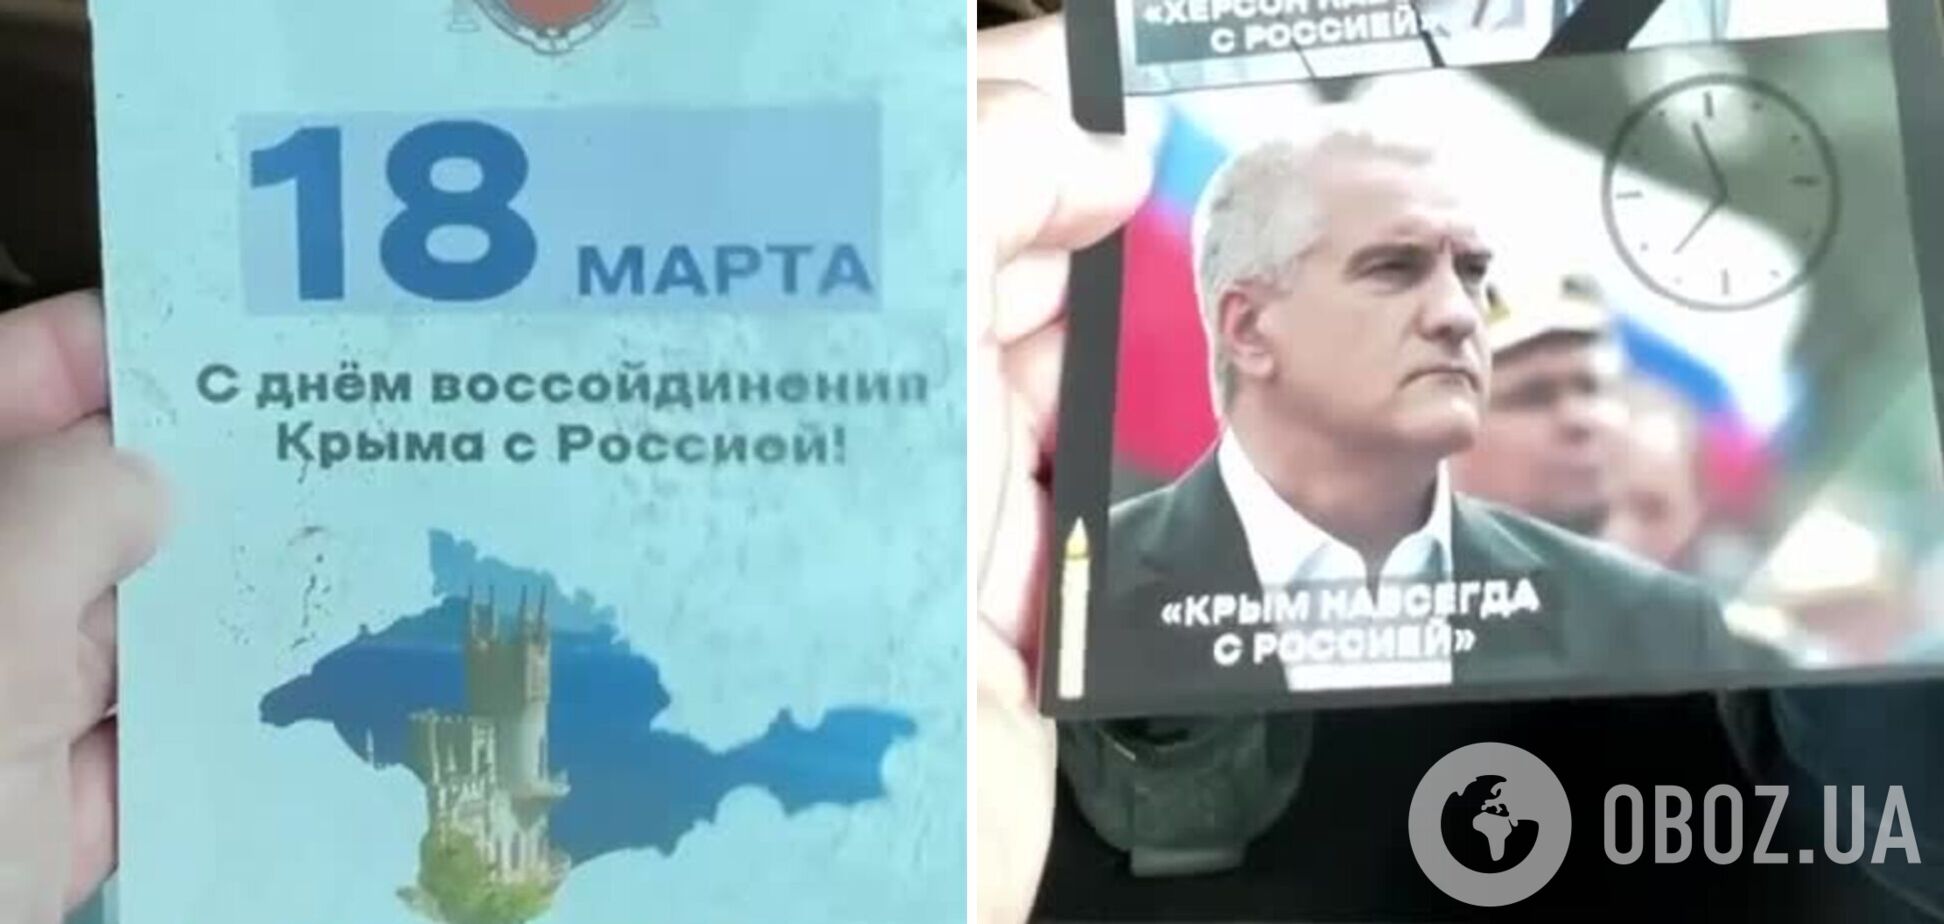 'С праздником!' В оккупированном Крыму раздают 'похоронки' на Аксенова. Видео